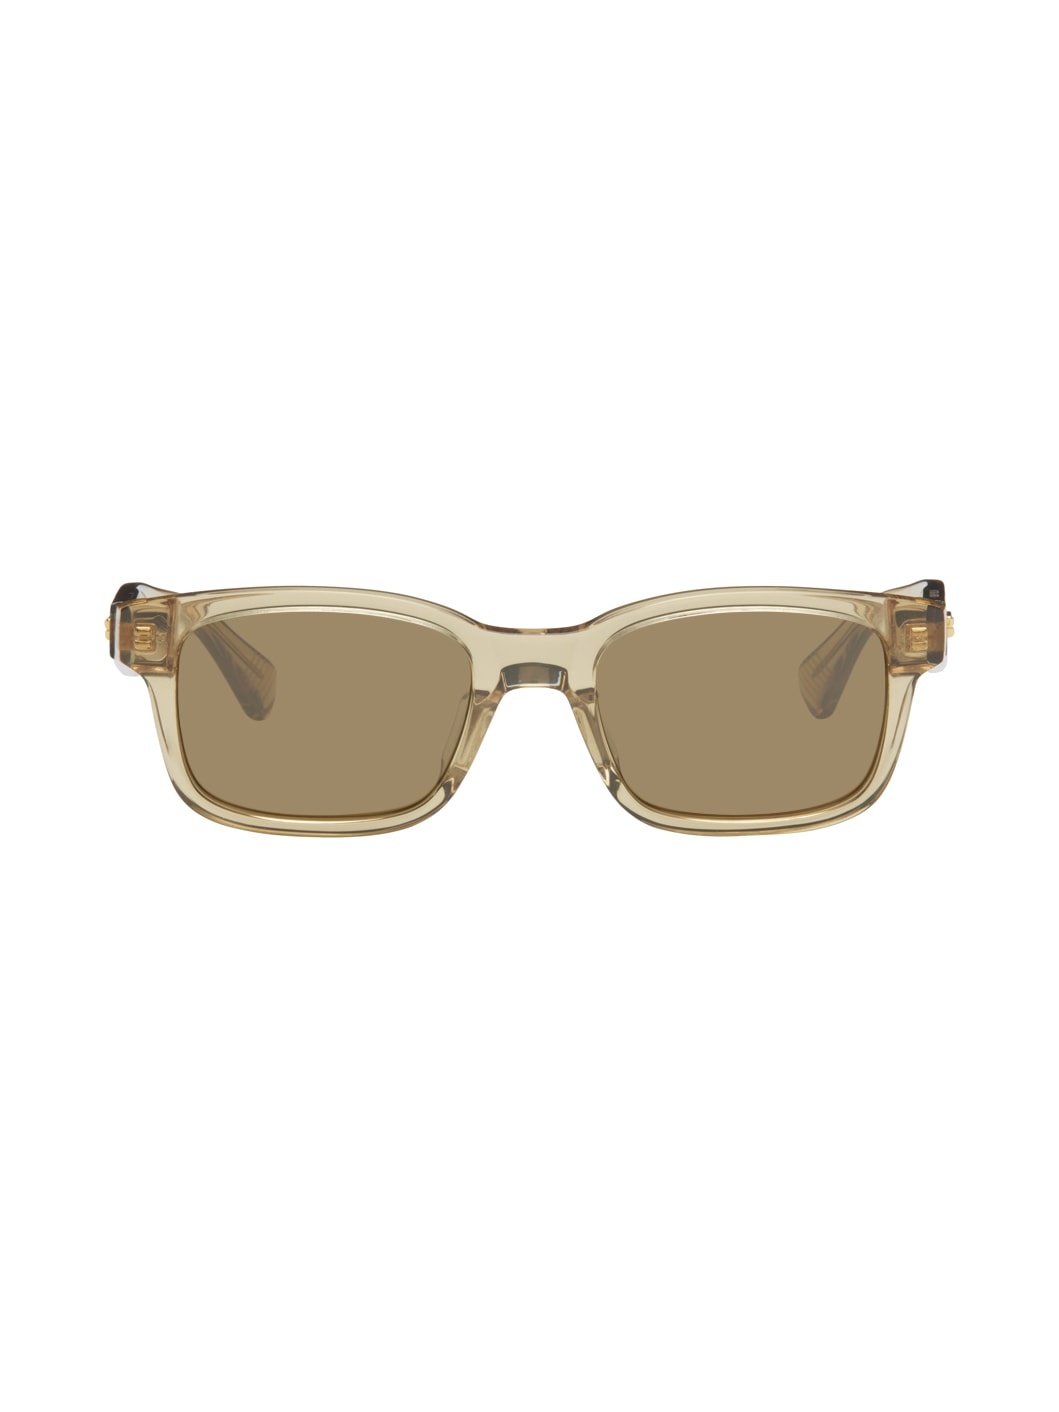 Brown Square Sunglasses - 1